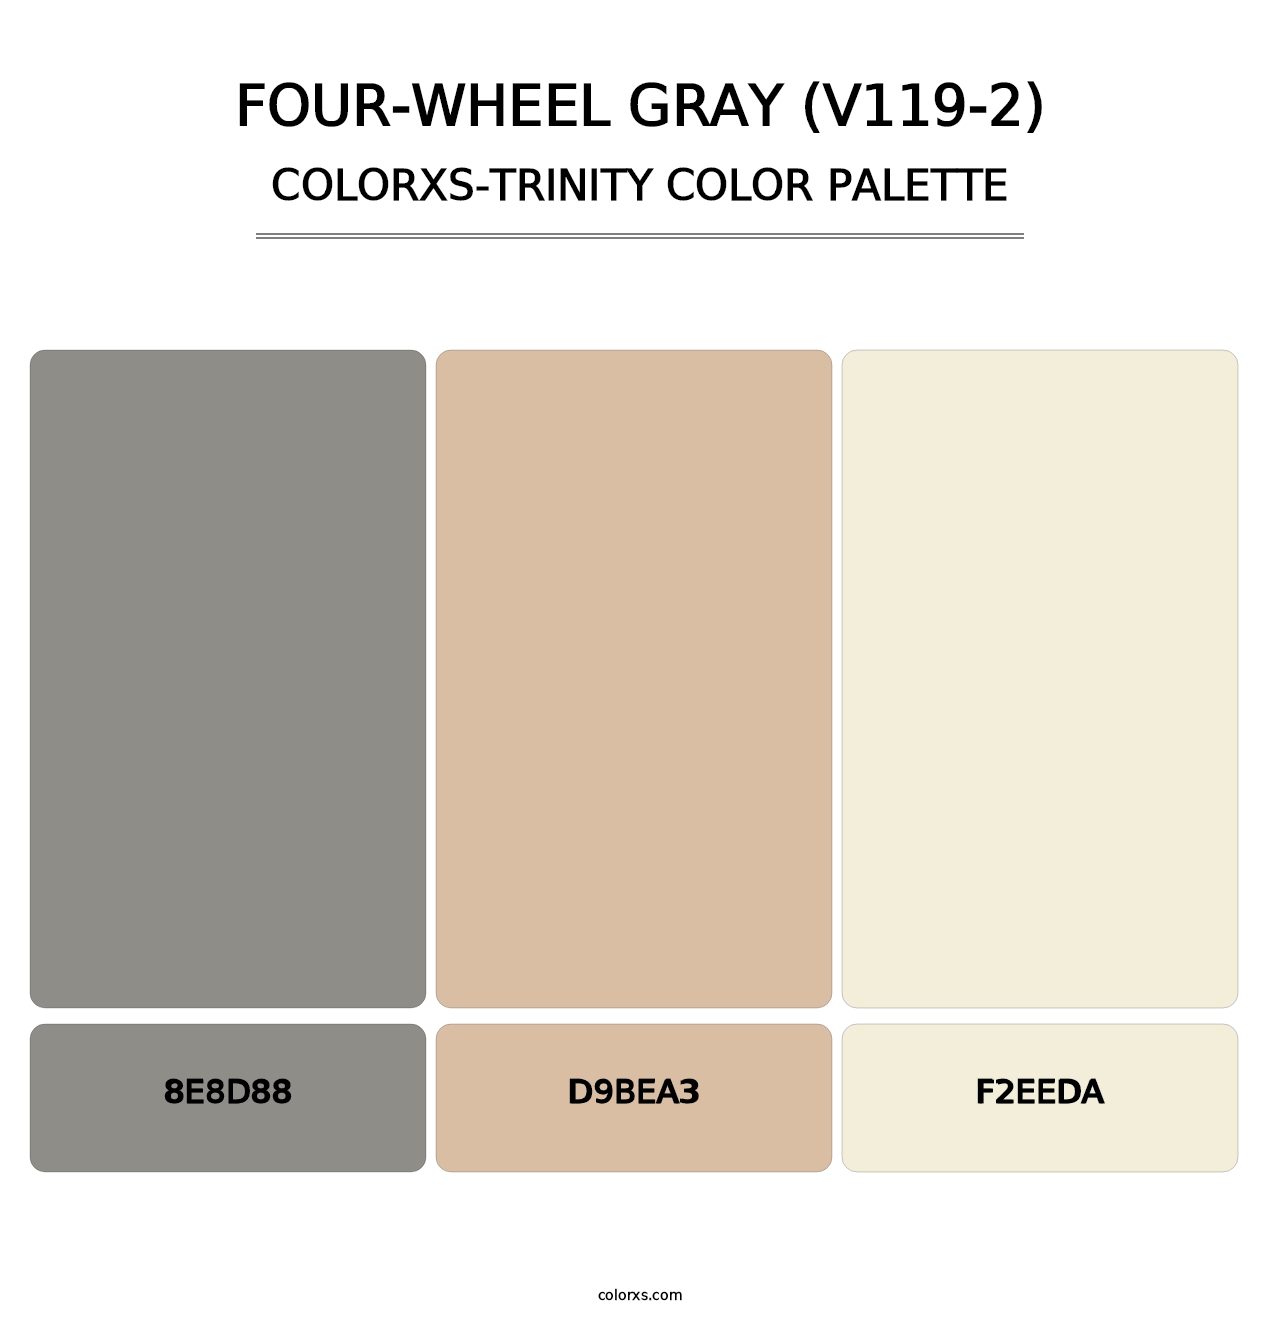 Four-Wheel Gray (V119-2) - Colorxs Trinity Palette